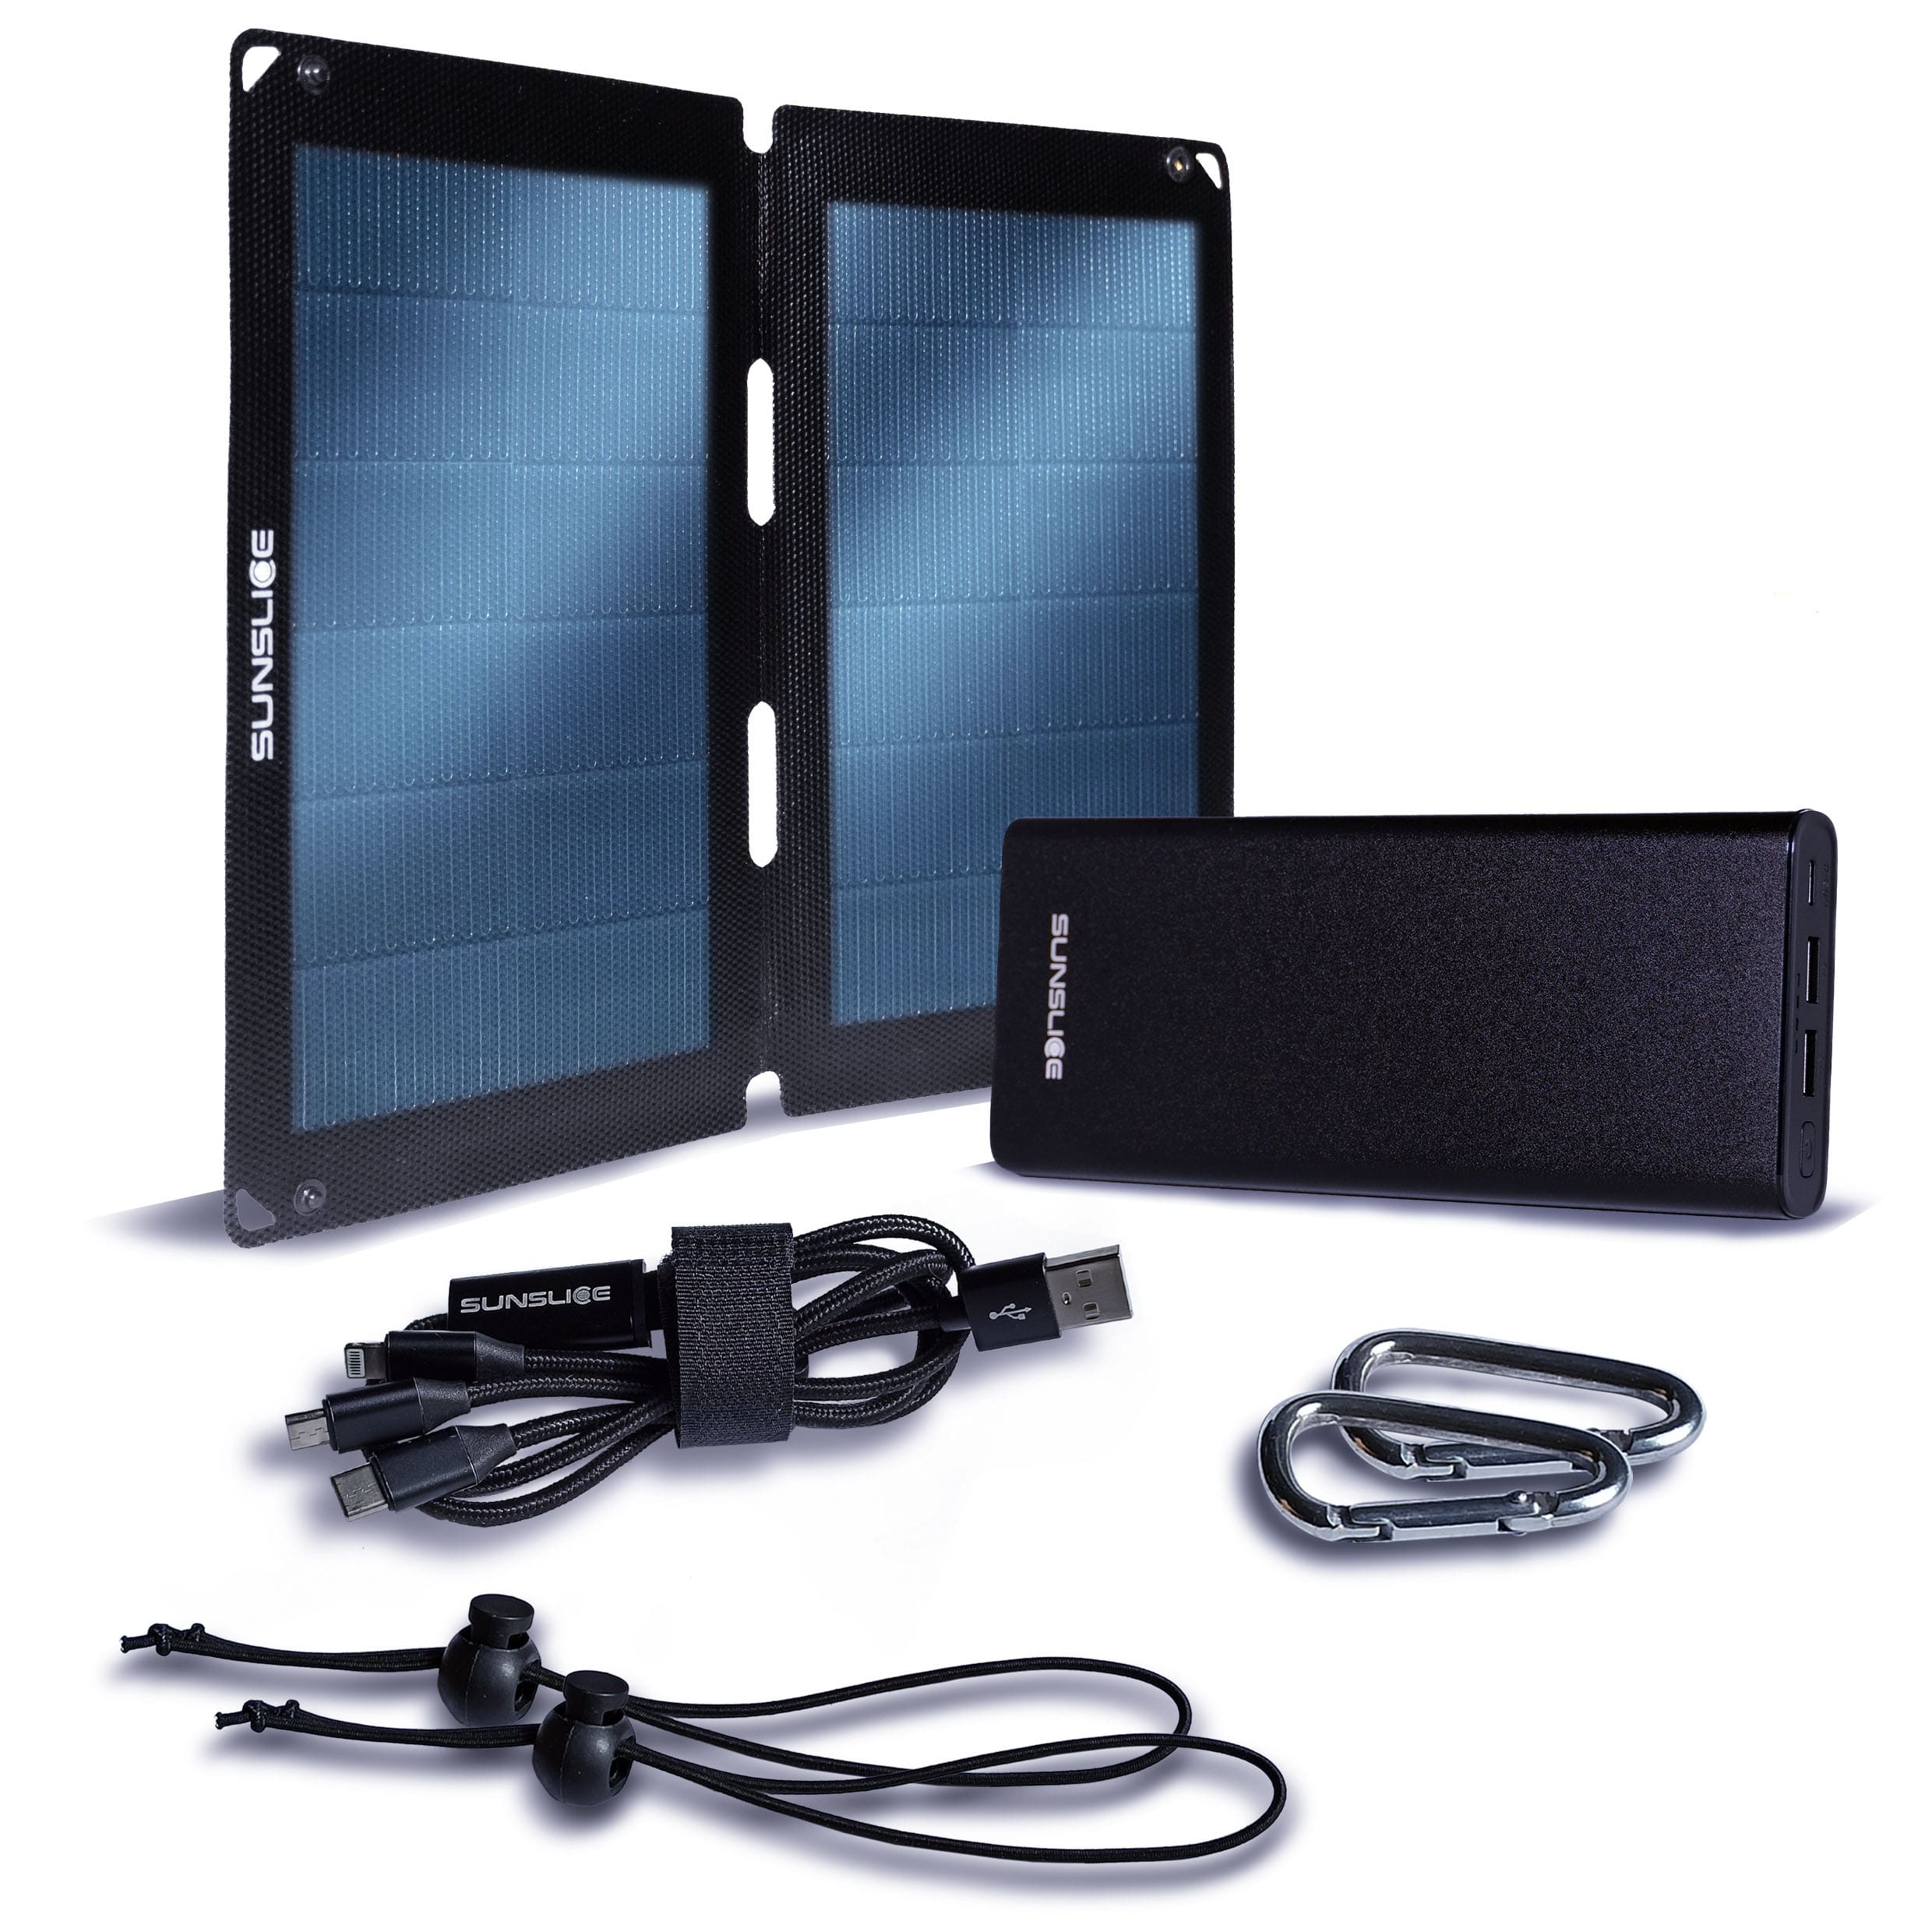 Kit mit einem Solarpanel fusion flex 12 und einer Gravity 100 Powerbank für Laptop + 2 Karabiner, 2 Gummibänder, 1 Dreizackkabel